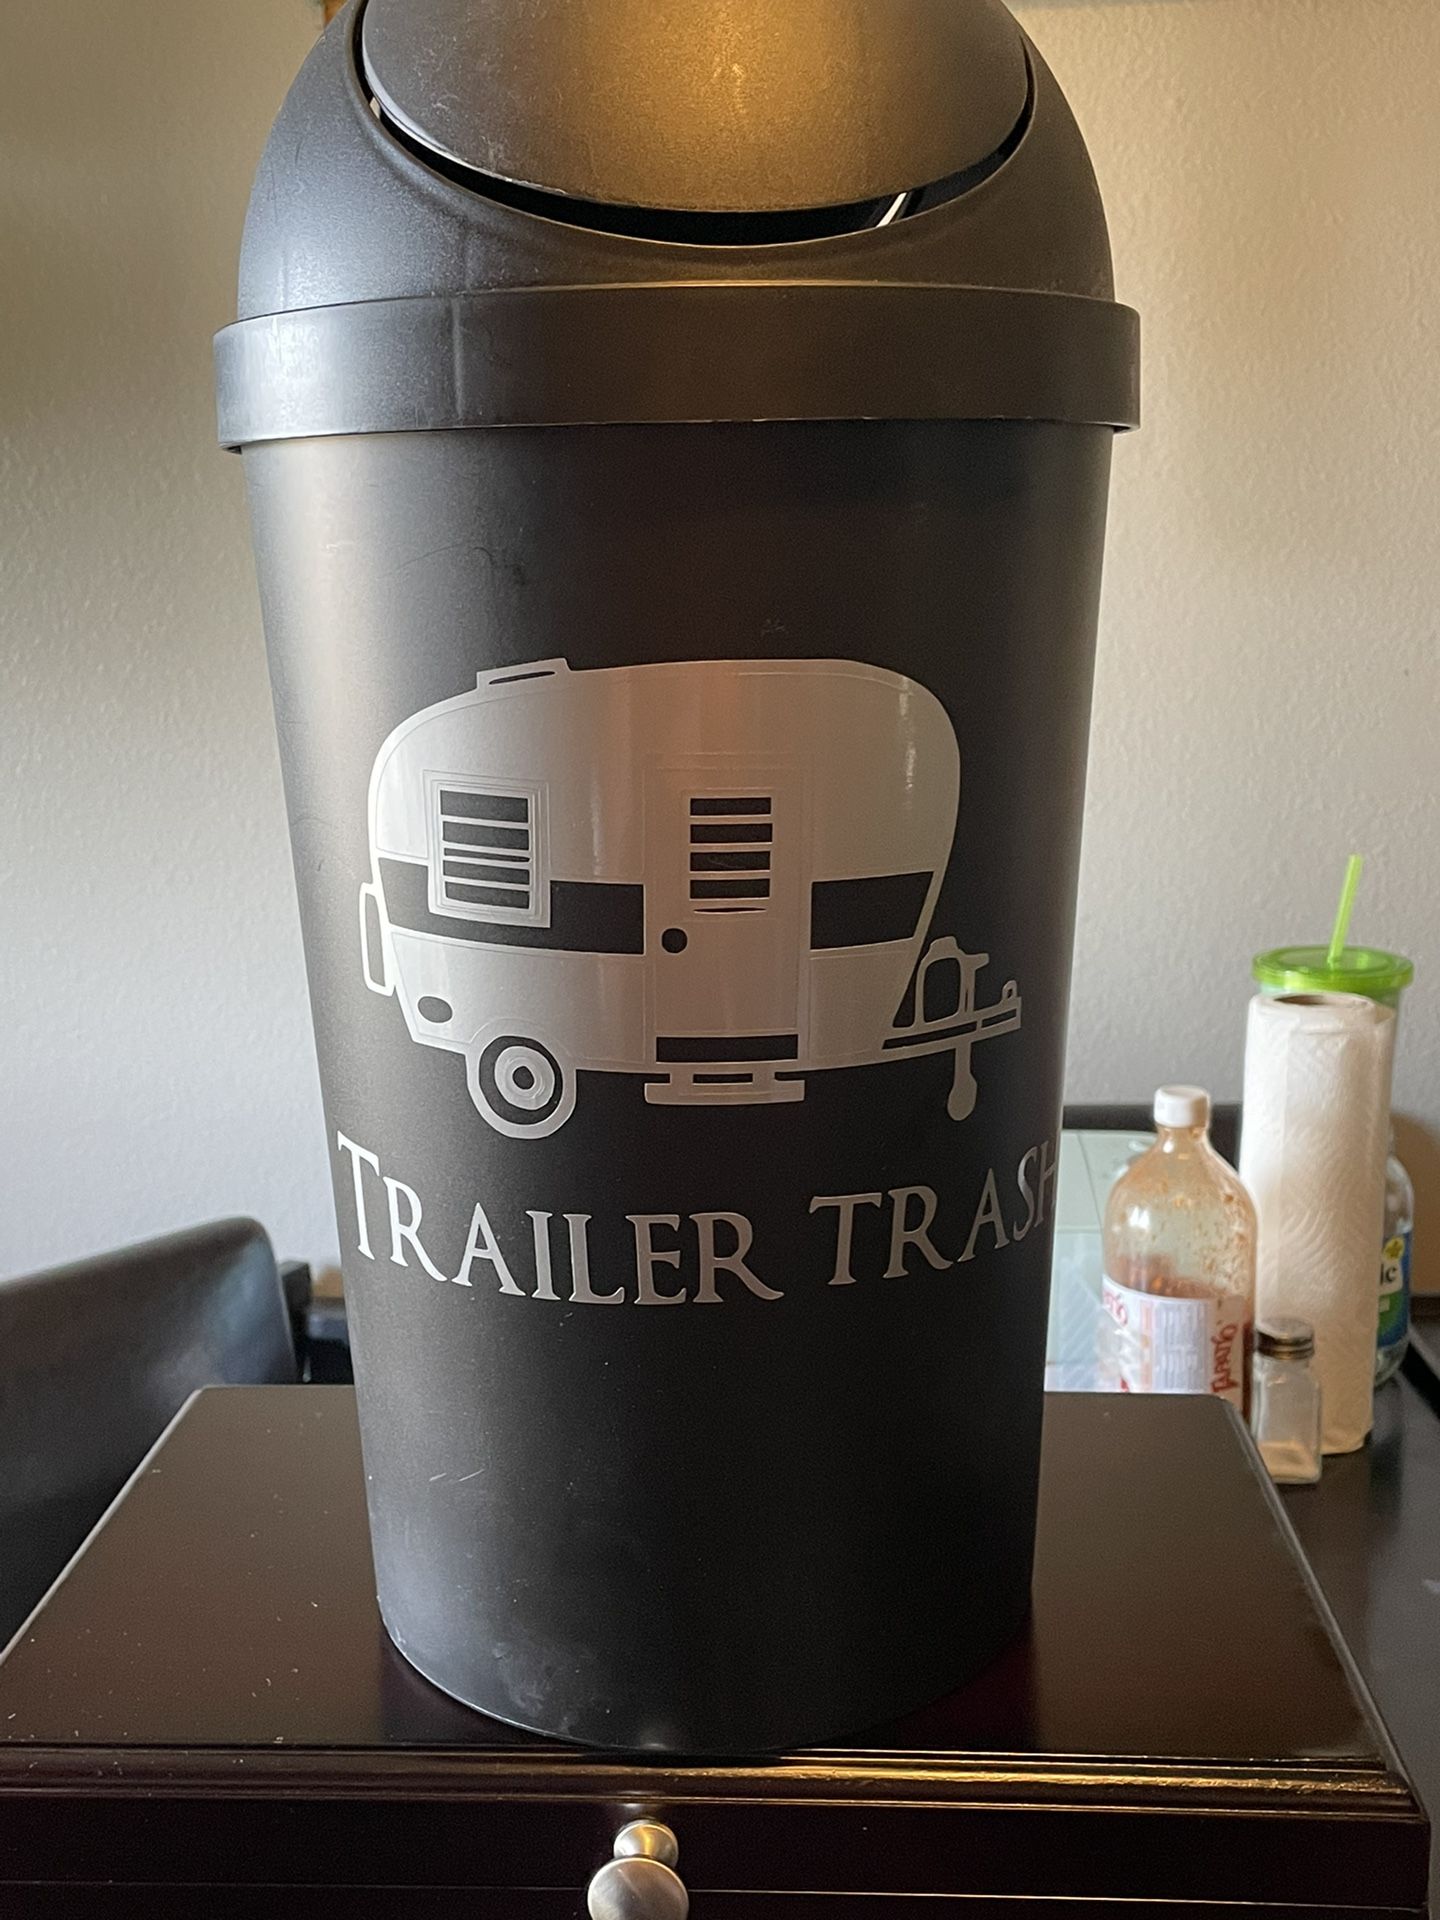 Trash Can For Camper Trailer 